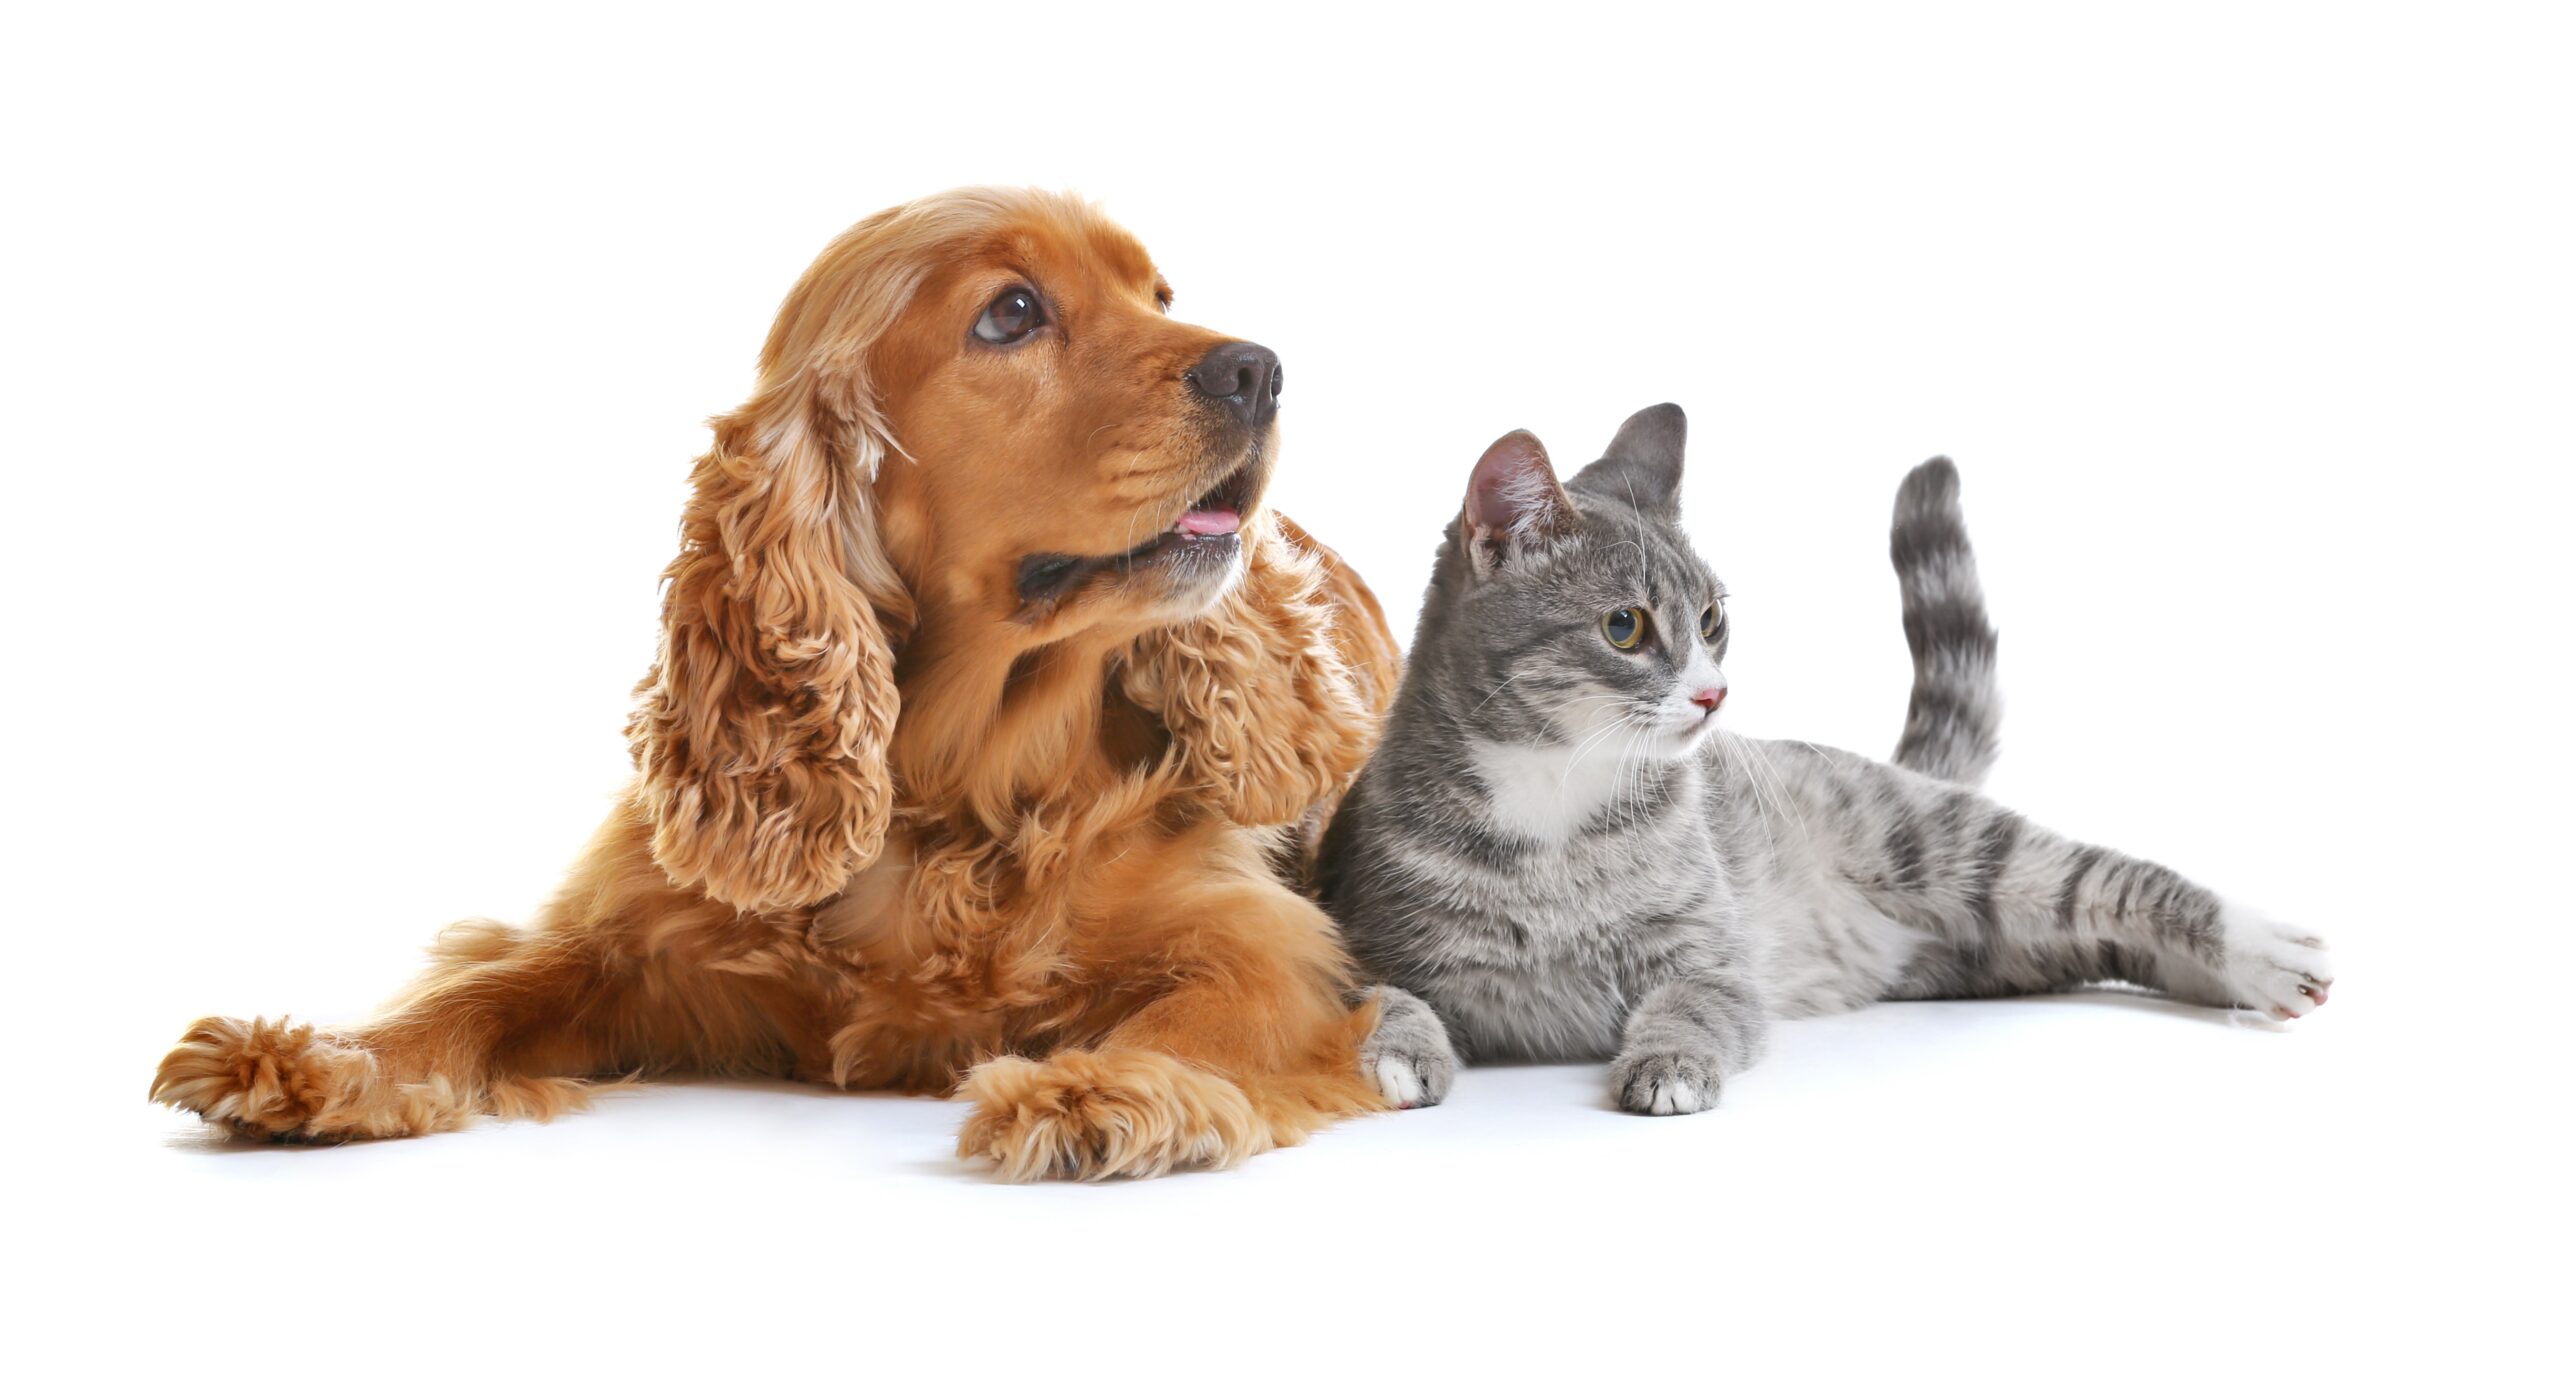 Картинка кошка и собака вместе на белом фоне